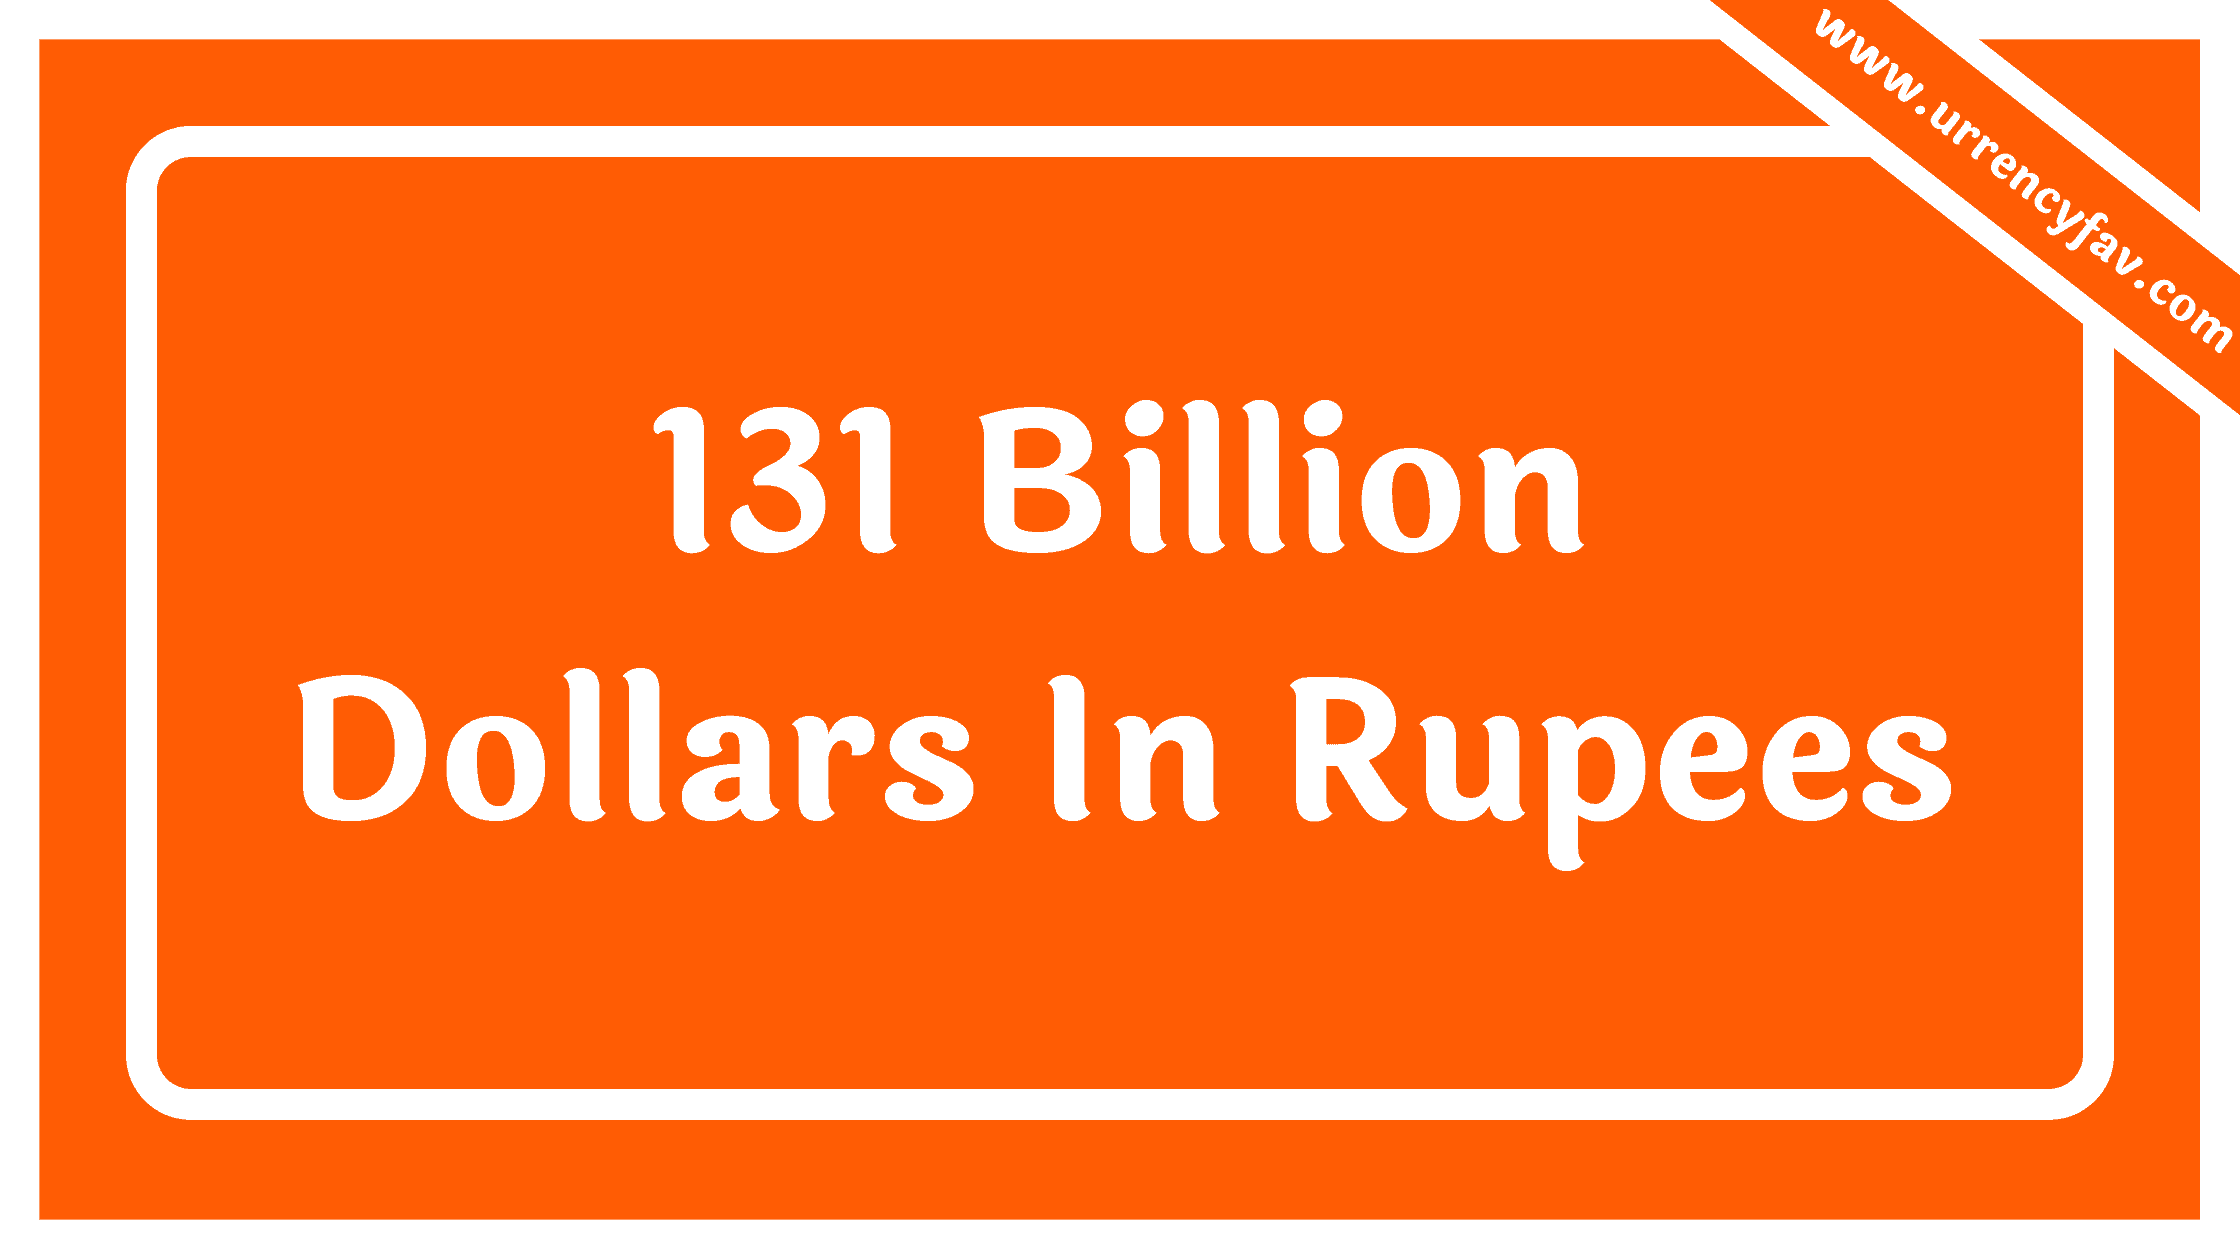 131 Billion Dollars In Rupees